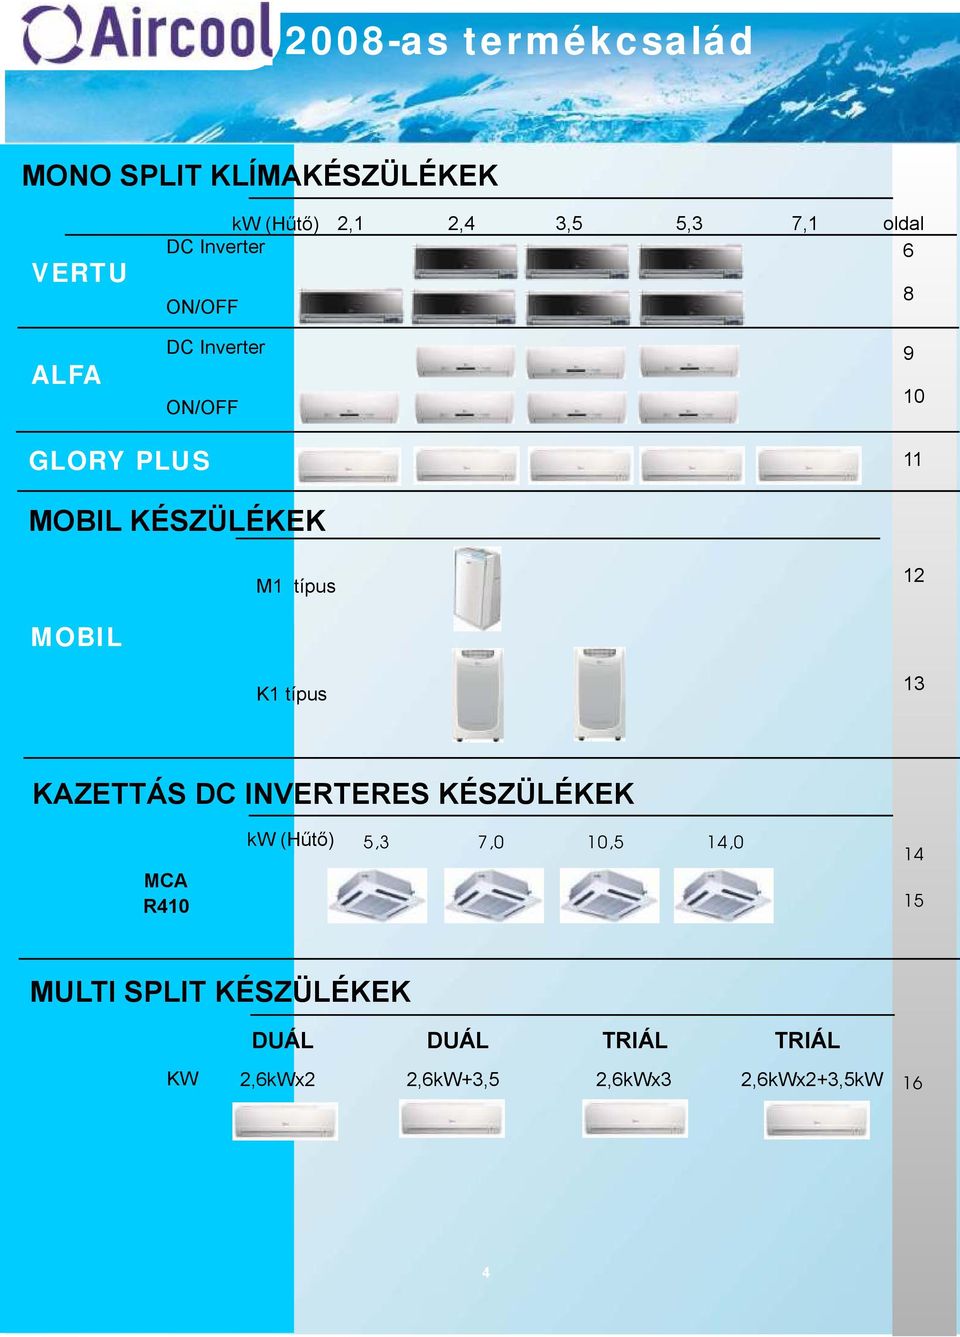 12 MOBIL K1 típus 13 KAZETTÁS DC INVERTERES KÉSZÜLÉKEK MCA R410 kw (Hűtő) 5,3 7,0 10,5 14,0